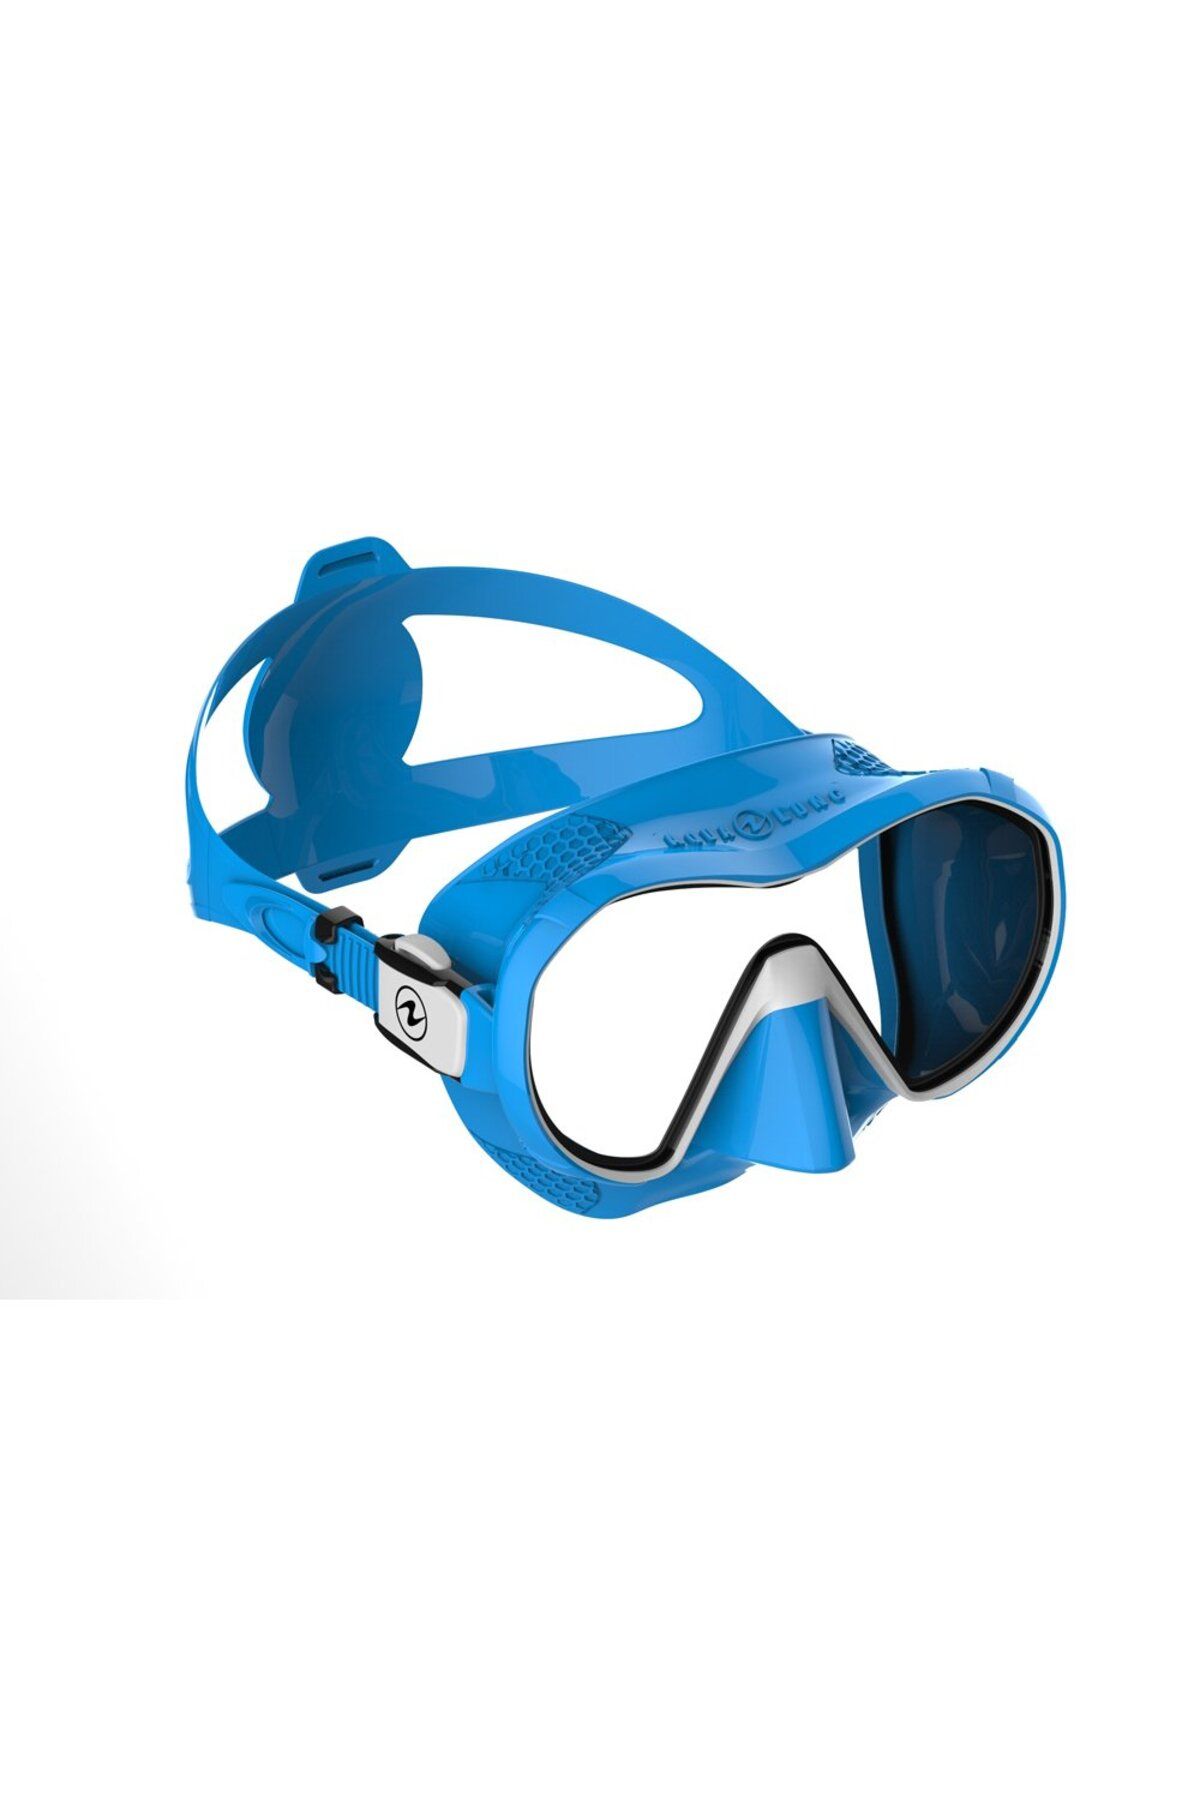 Aqua Lung Plazma Mavi Silikon/beyaz Dalış Maskesi